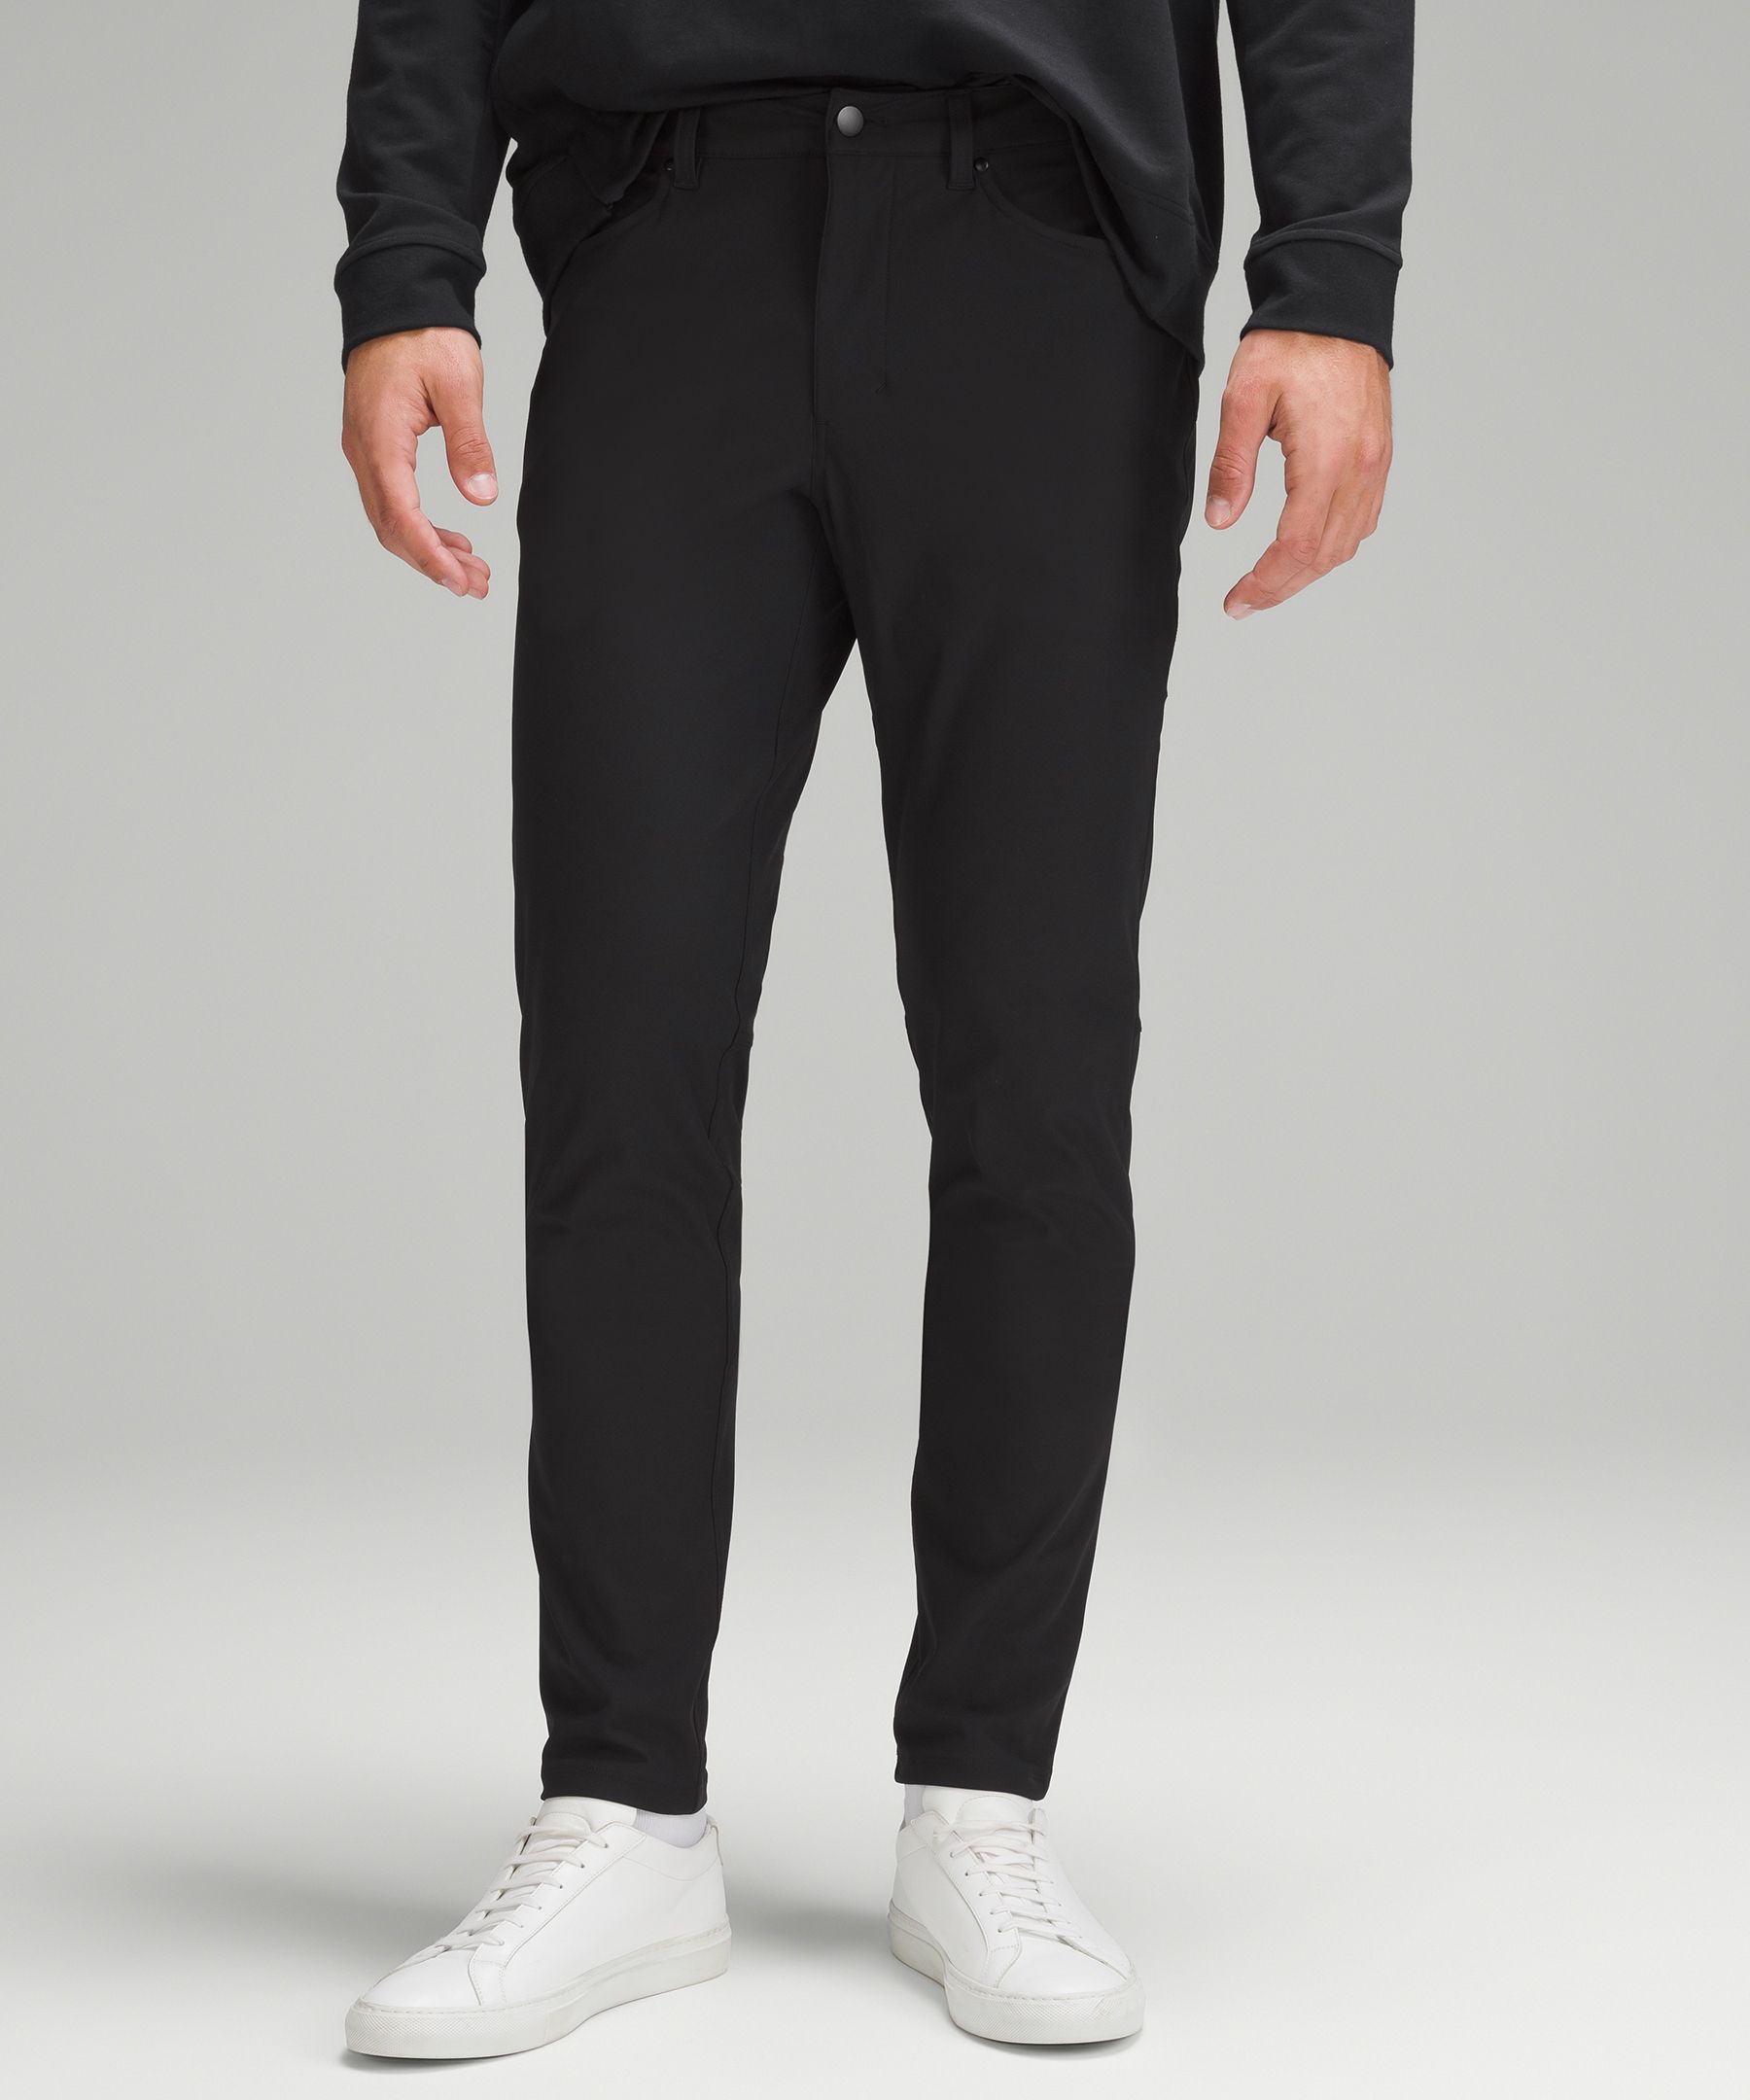 Commission Slim-Fit Pant 32 *Warpstreme, Men's Trousers